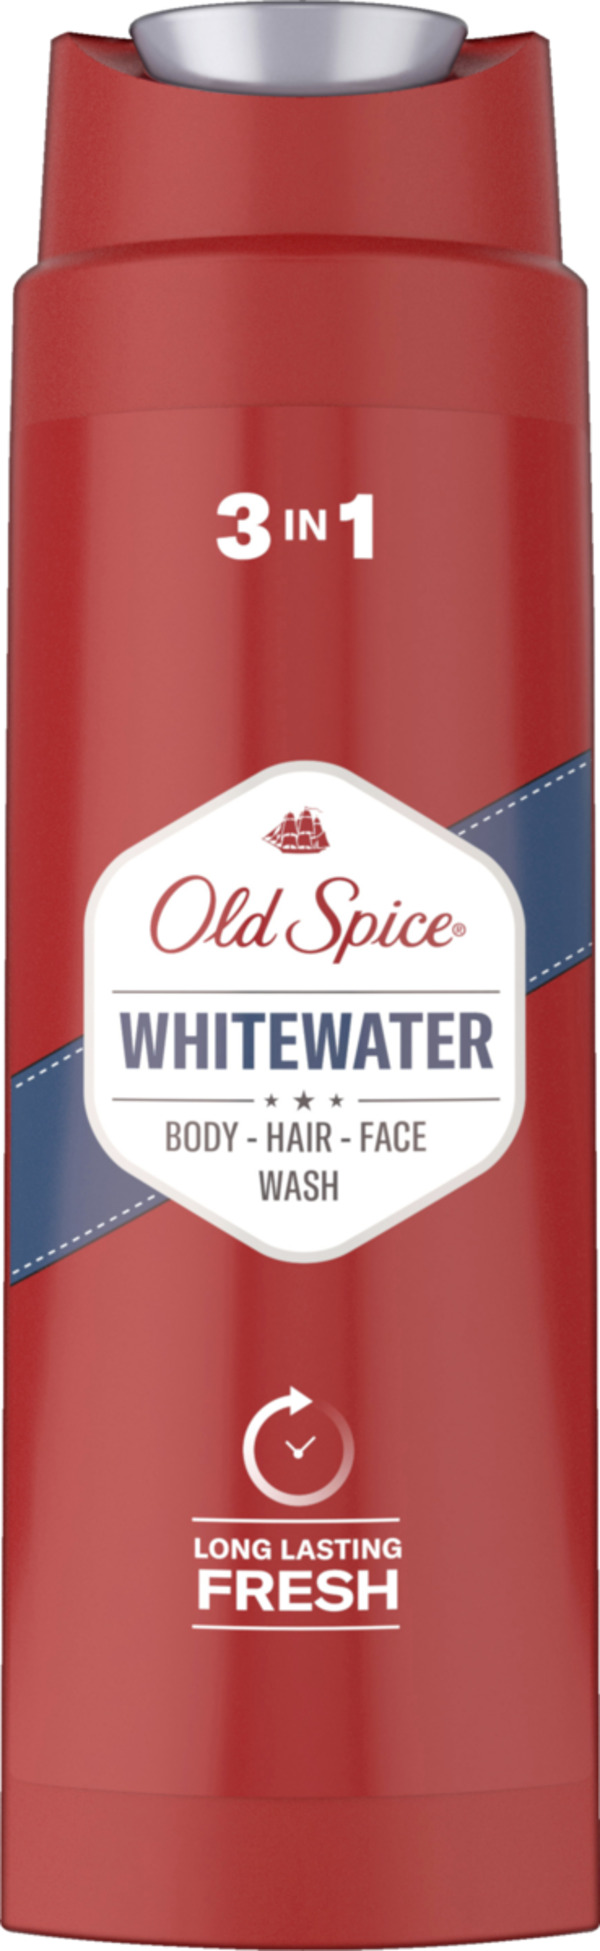 Bild 1 von Old Spice Whitewater Duschgel